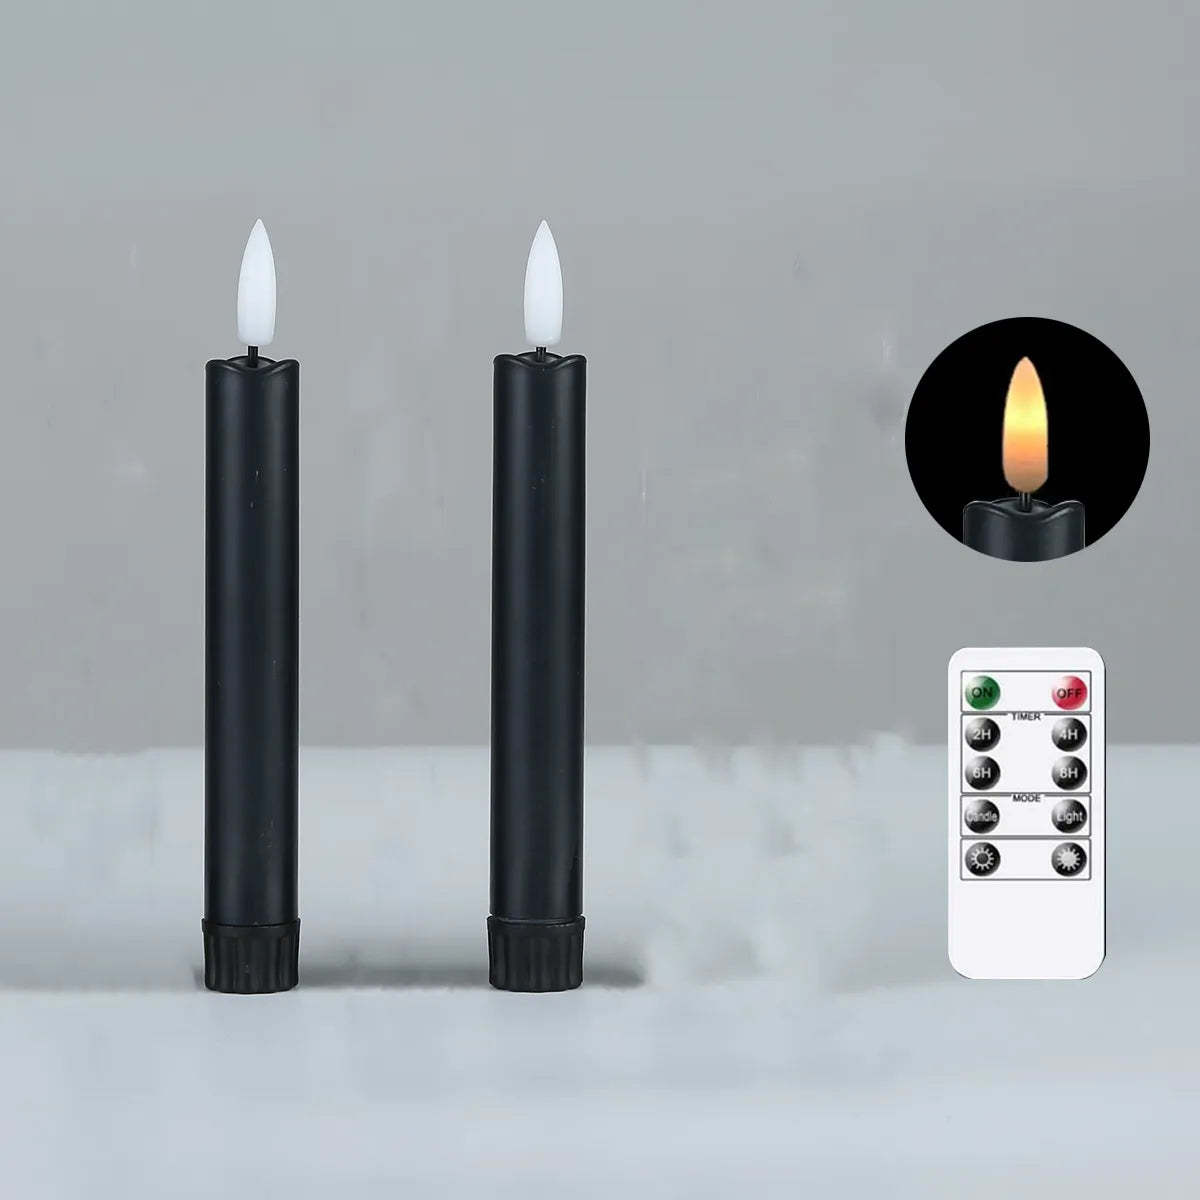 حزمة من 2 شموع سوداء عديمة اللهب مقاس 6.5 بوصة/16.5 سم قصيرة LED للهالوين، شمعة LED بيضاء/بيج تعمل بالبطارية